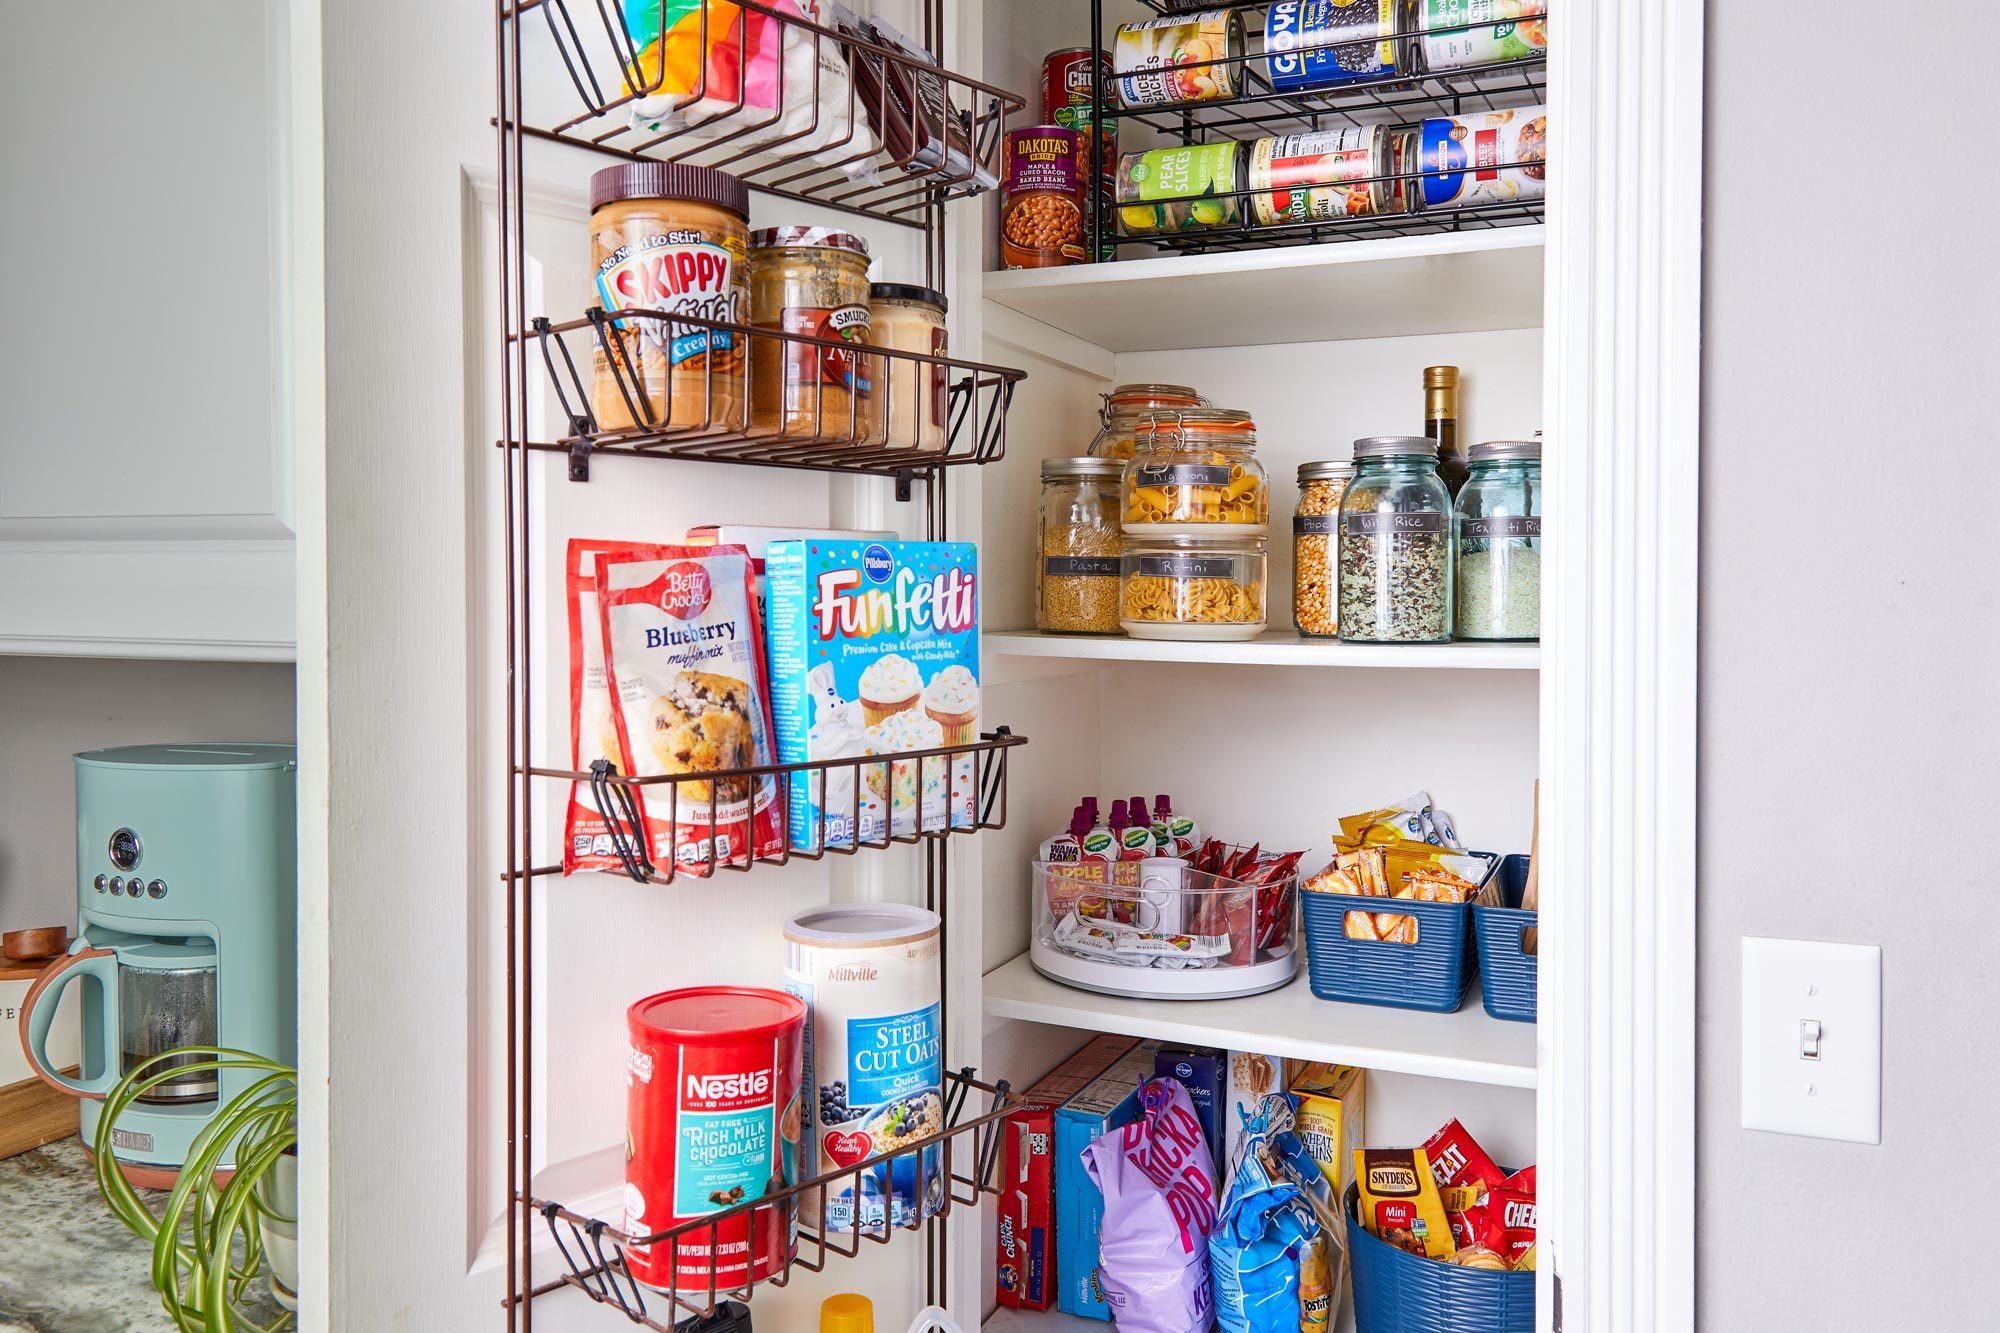 5 Small Kitchen Pantry Ideas to Maximize Storage